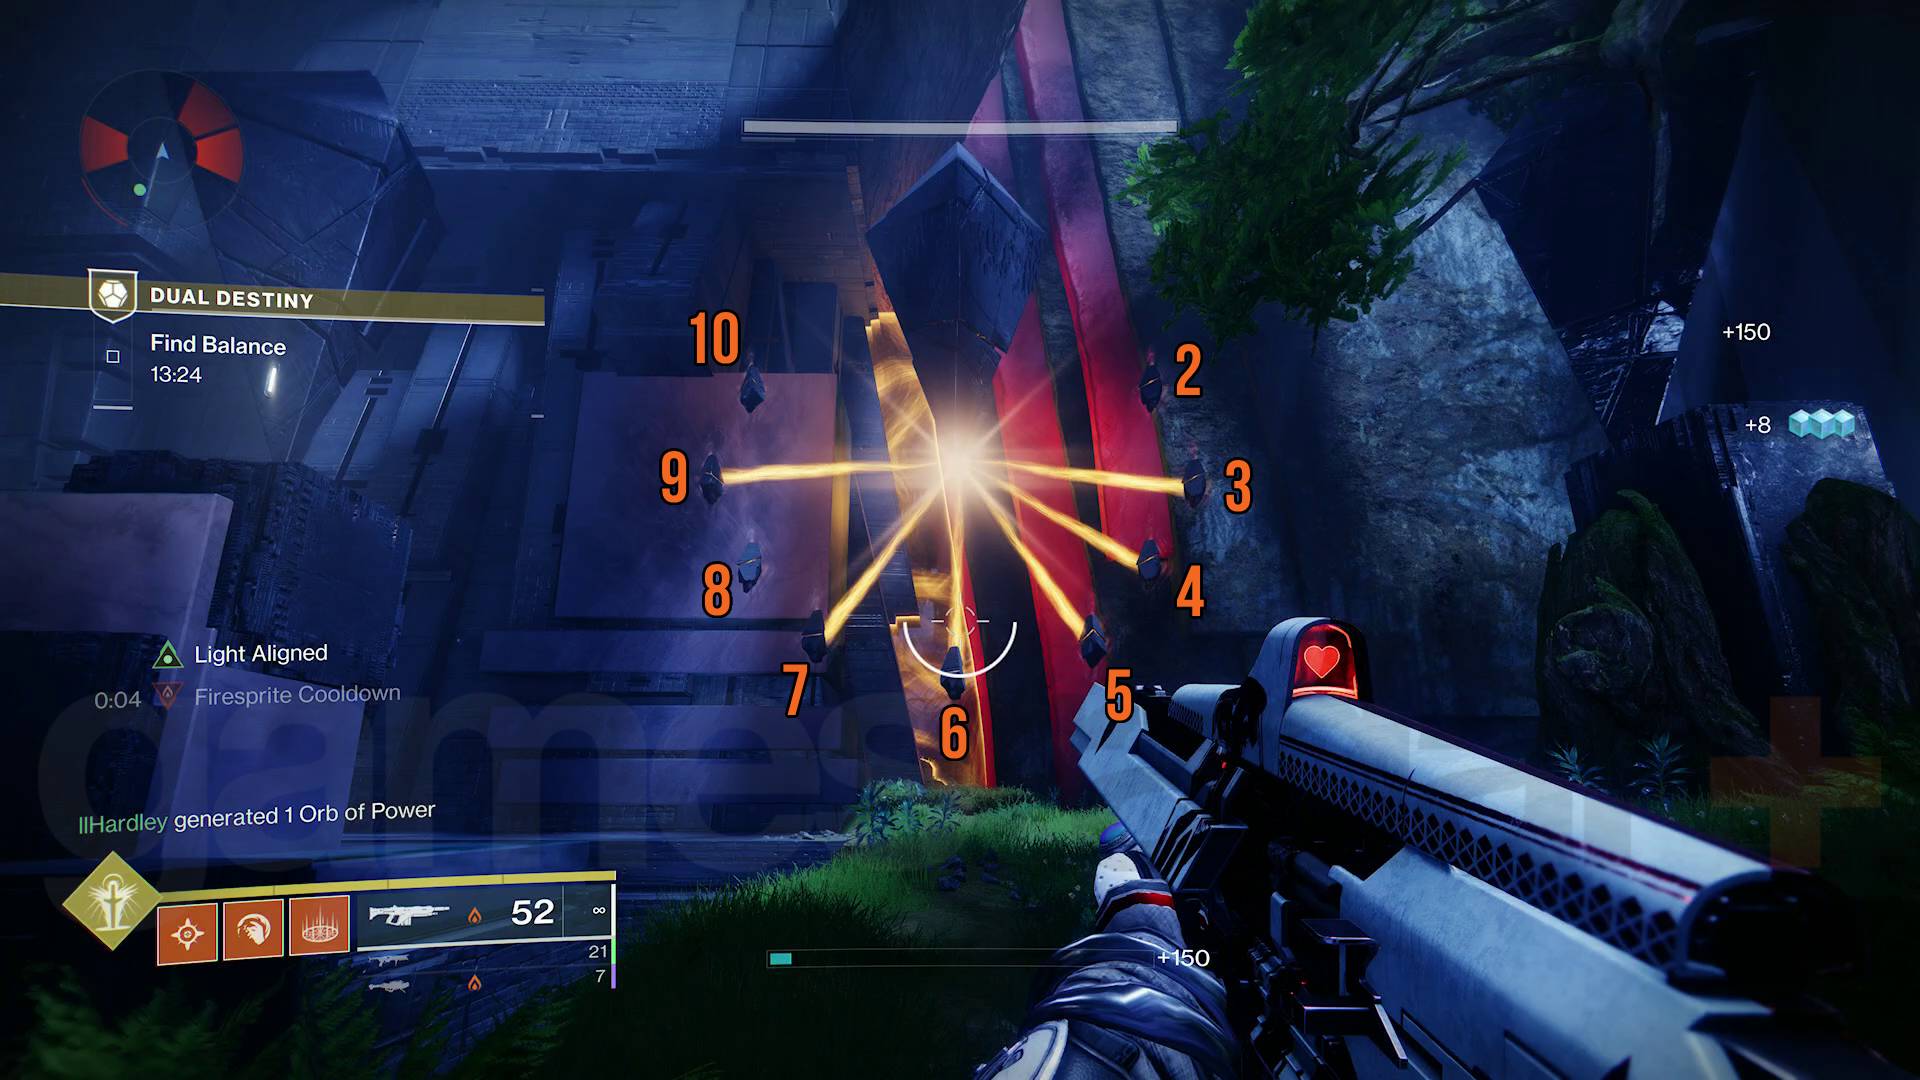 Destiny 2 Dual Destiny exotic mission intrusion area clockface puzzle